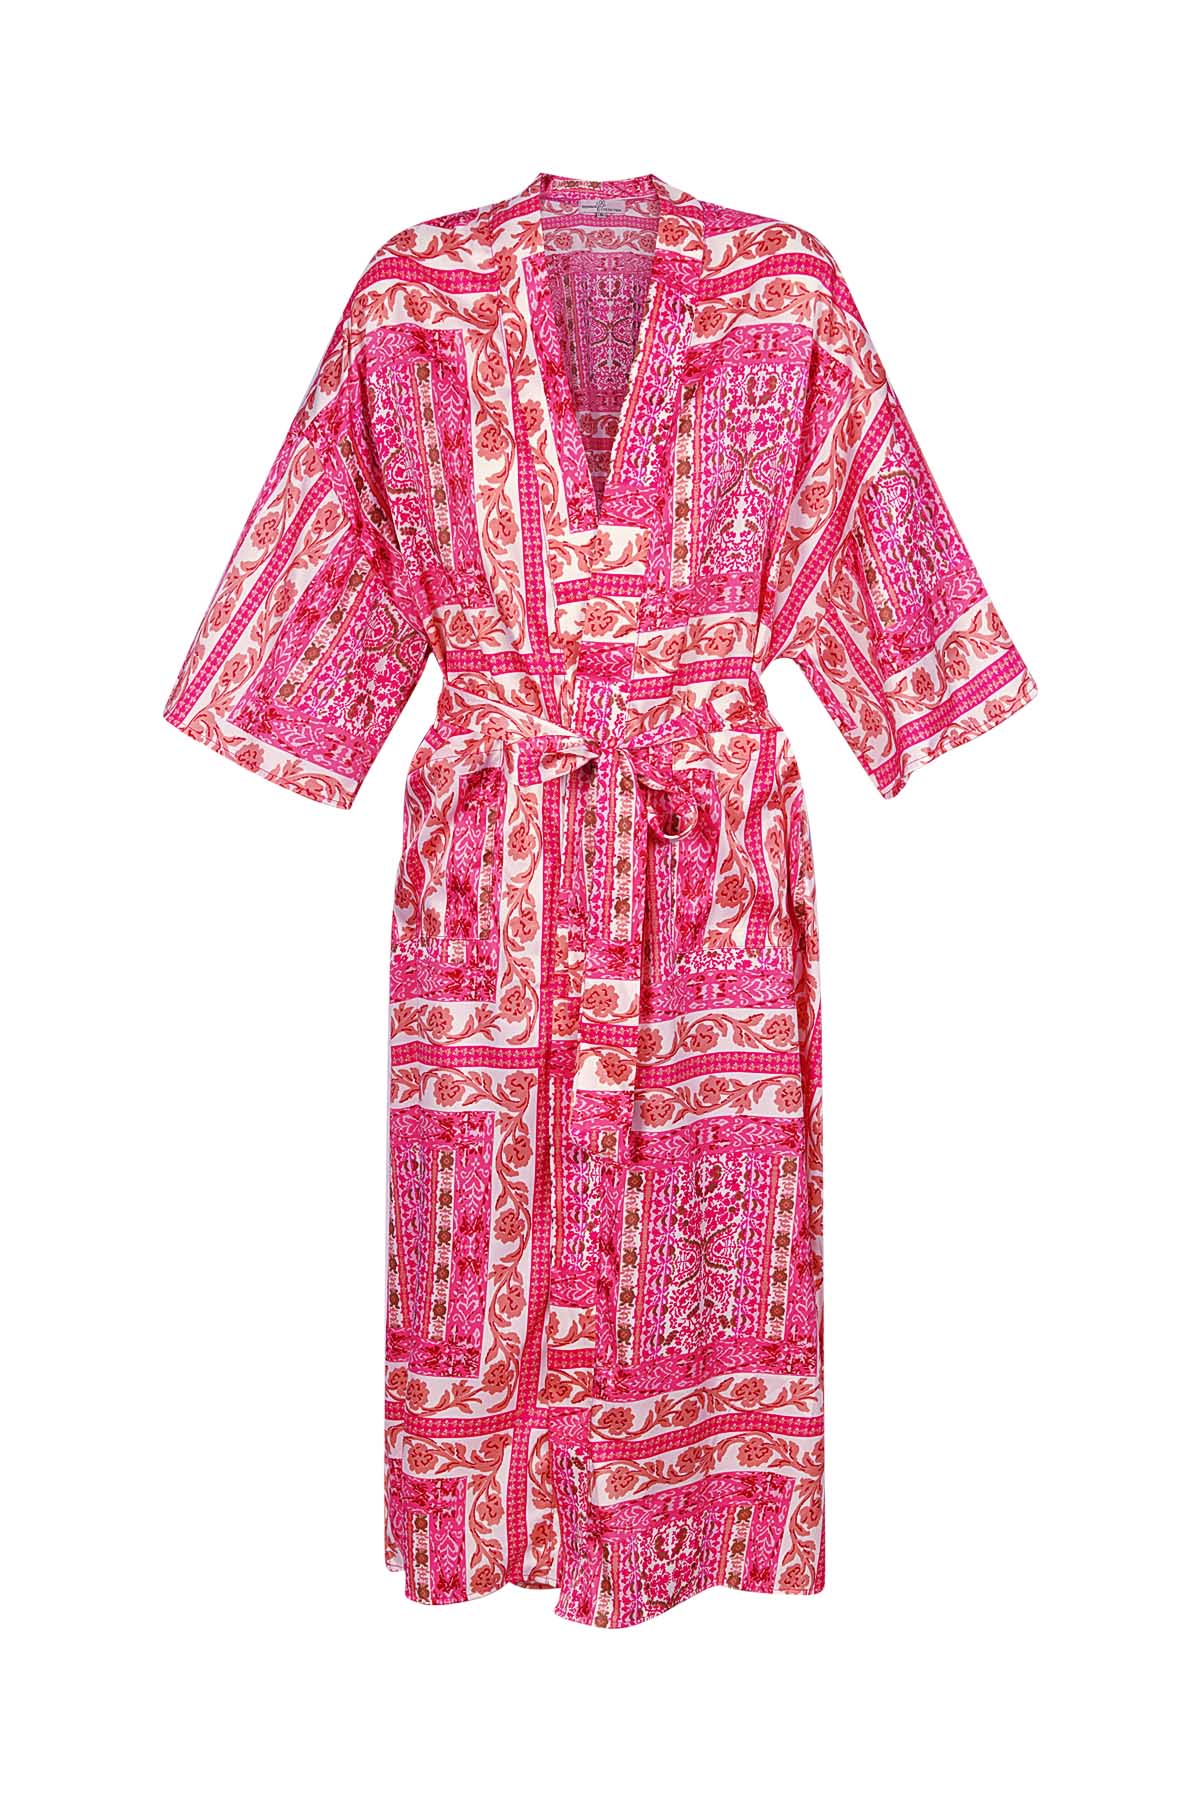 Stampa Kimono occupato - rosa h5 